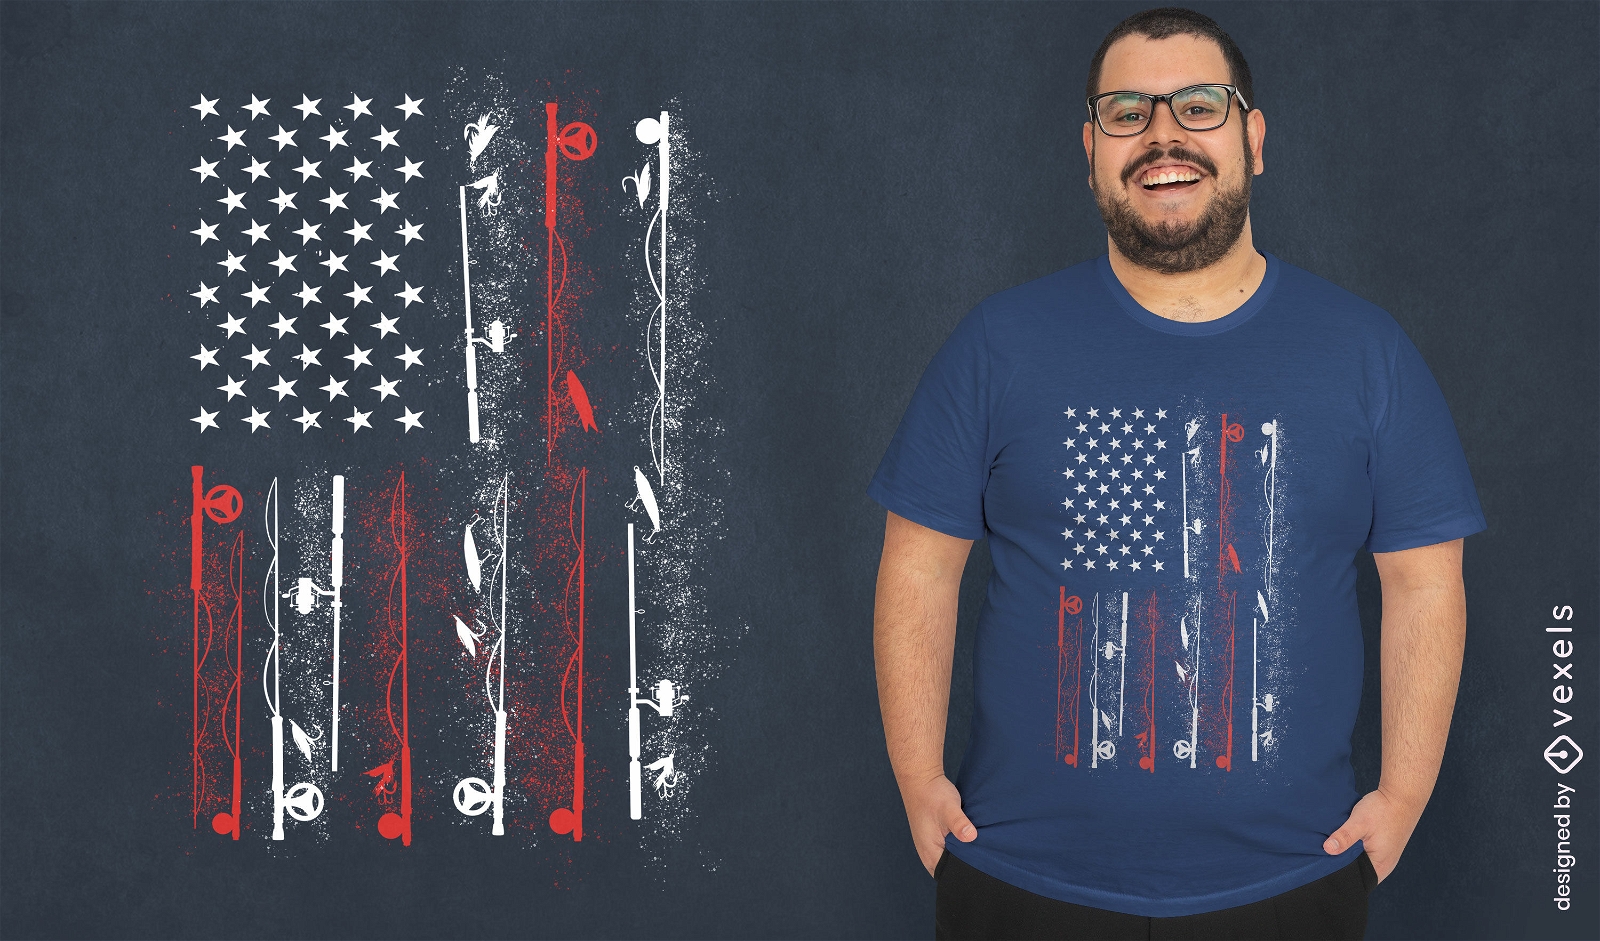 https://images.vexels.com/media/users/3/351624/raw/01c3df3d02f3c58b2fb5df8bf35052a0-american-flag-fish-t-shirt-design.jpg